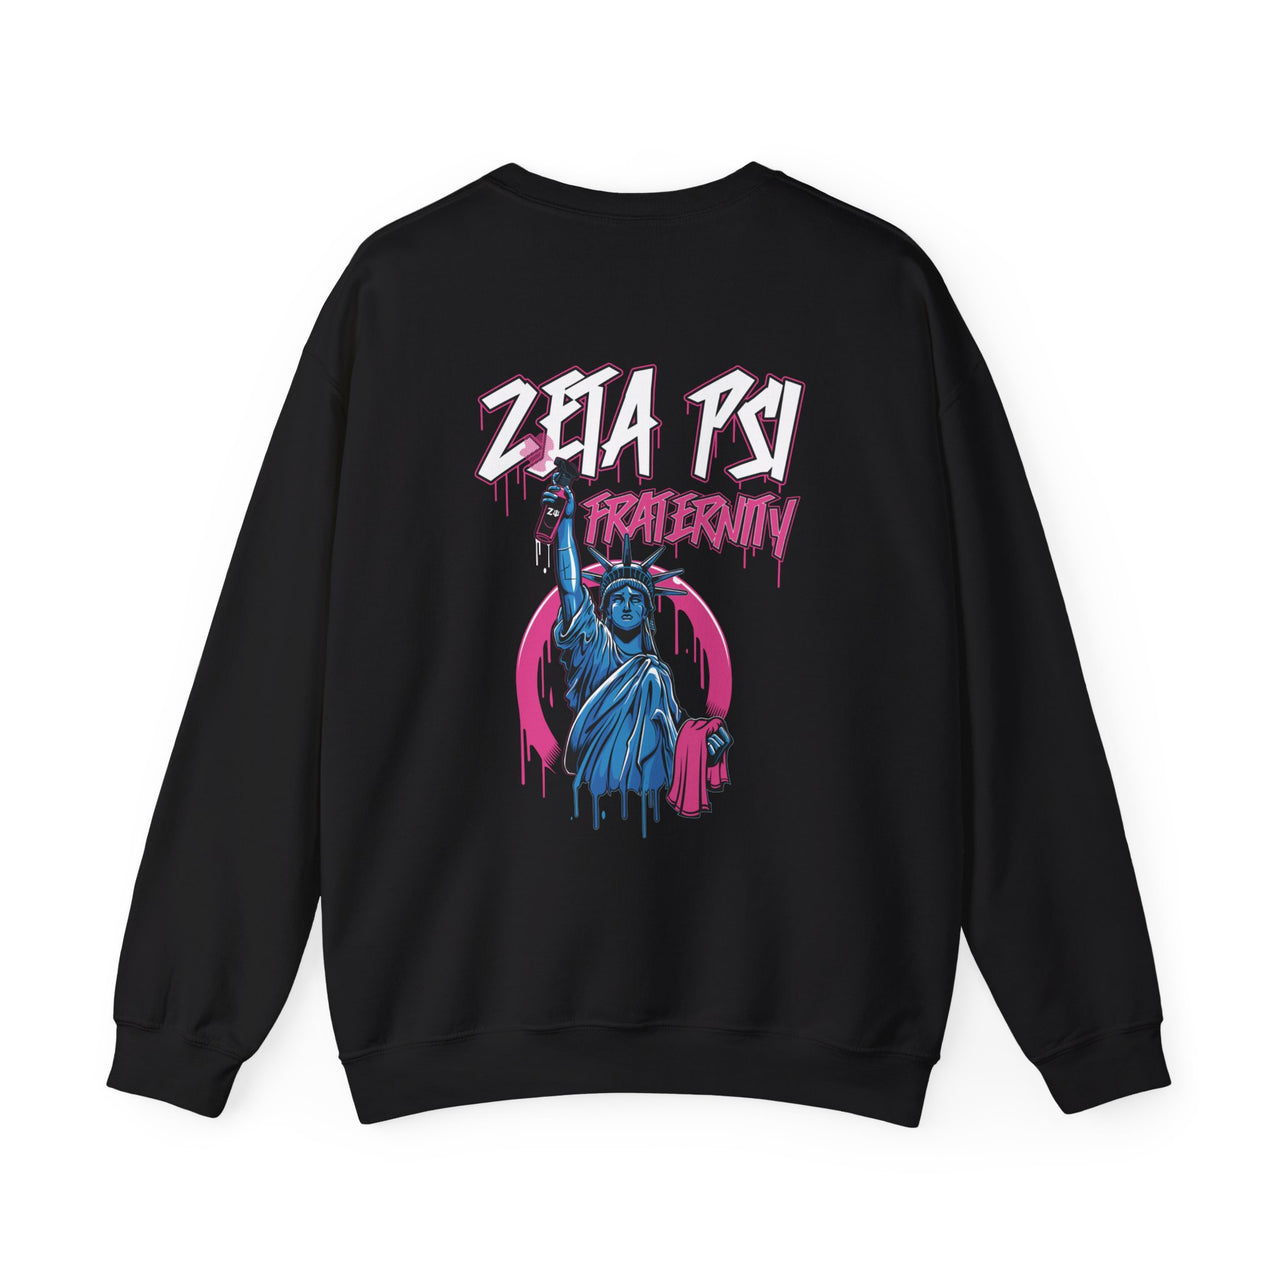 Zeta Psi Graphic Crewneck Sweatshirt | Liberty Rebel